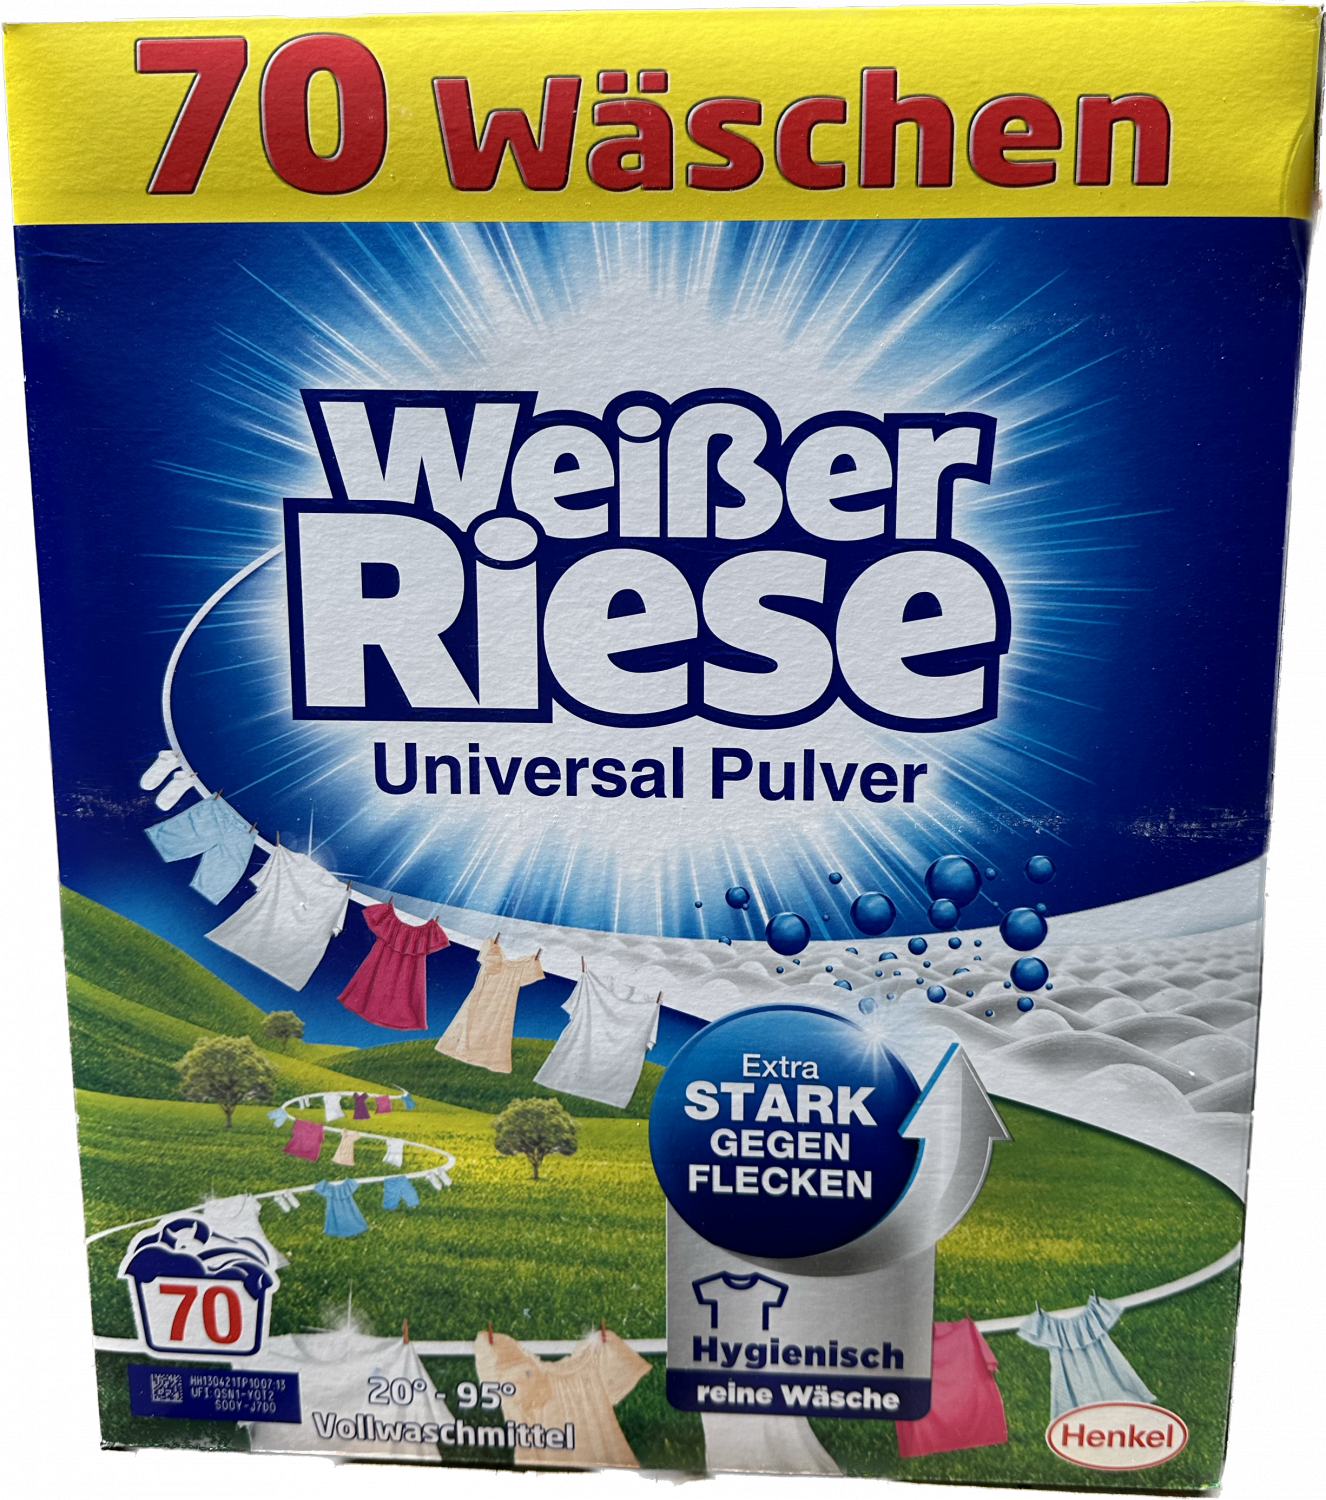 Weisser riese prášek univerzální 70 pracích dáveki 3,85kg dovoz Německo :  Drogerie, parfémy, BIO produkty